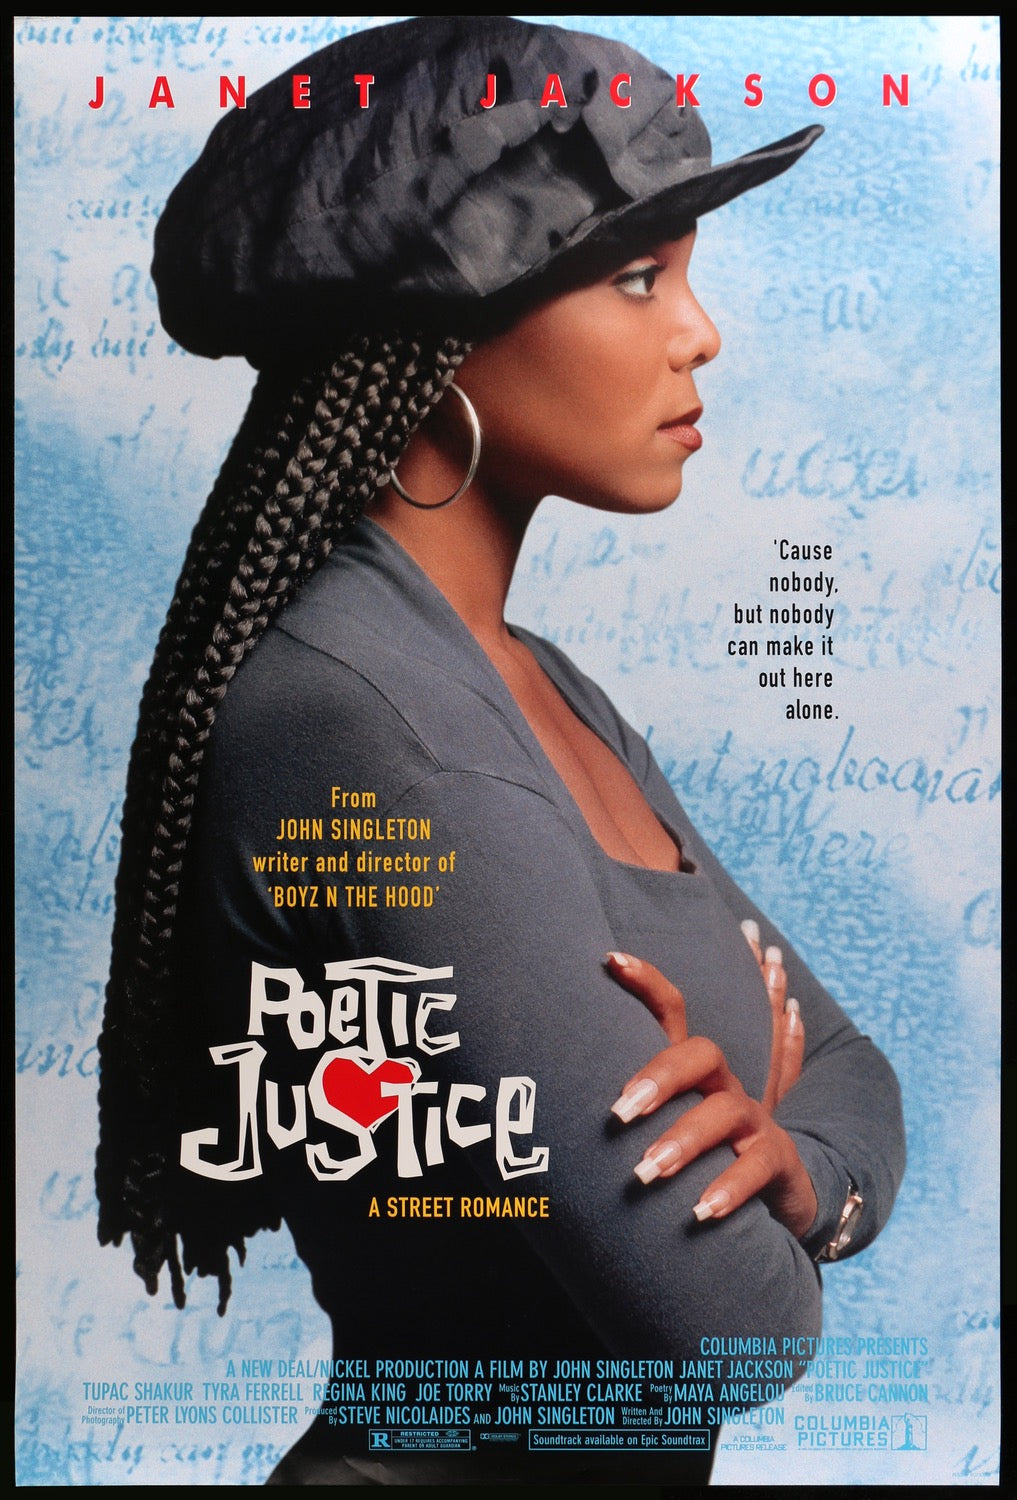 Poetic Justice (1993) original movie poster for sale at Original Film Art